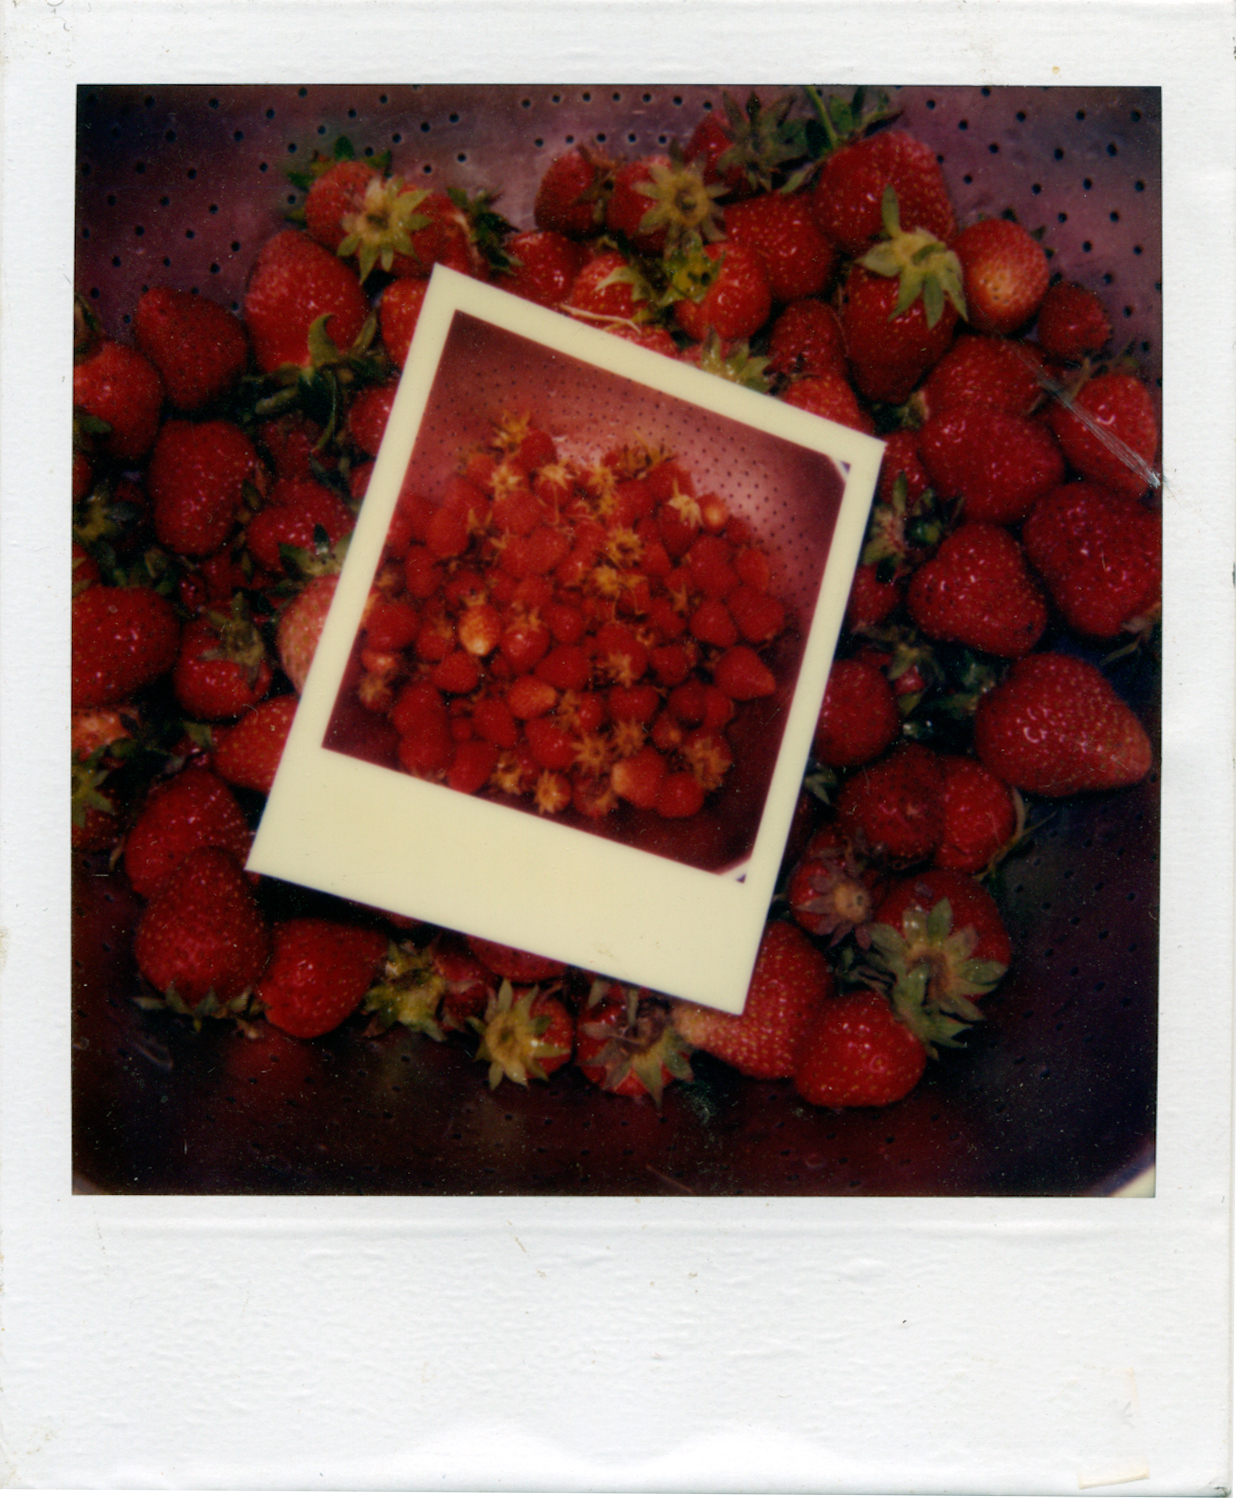    Strawberries upon strawberries   